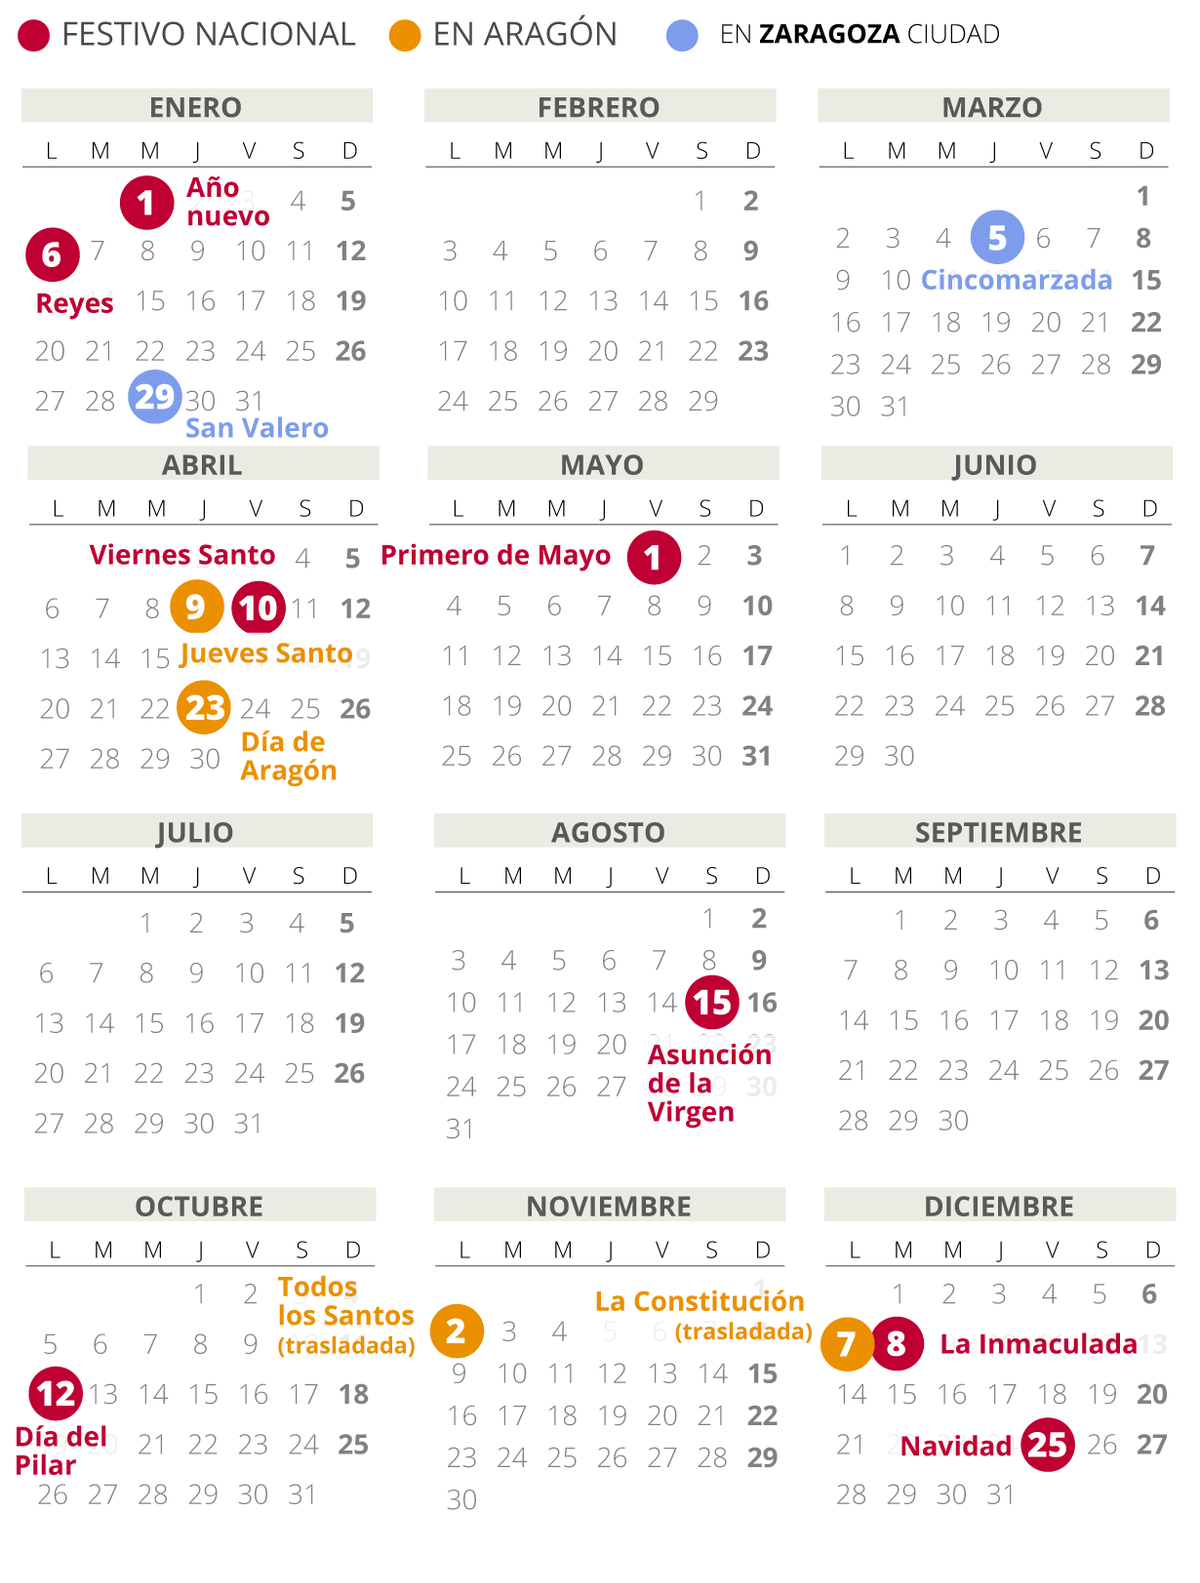 Calendario laboral de Zaragoza del 2020.